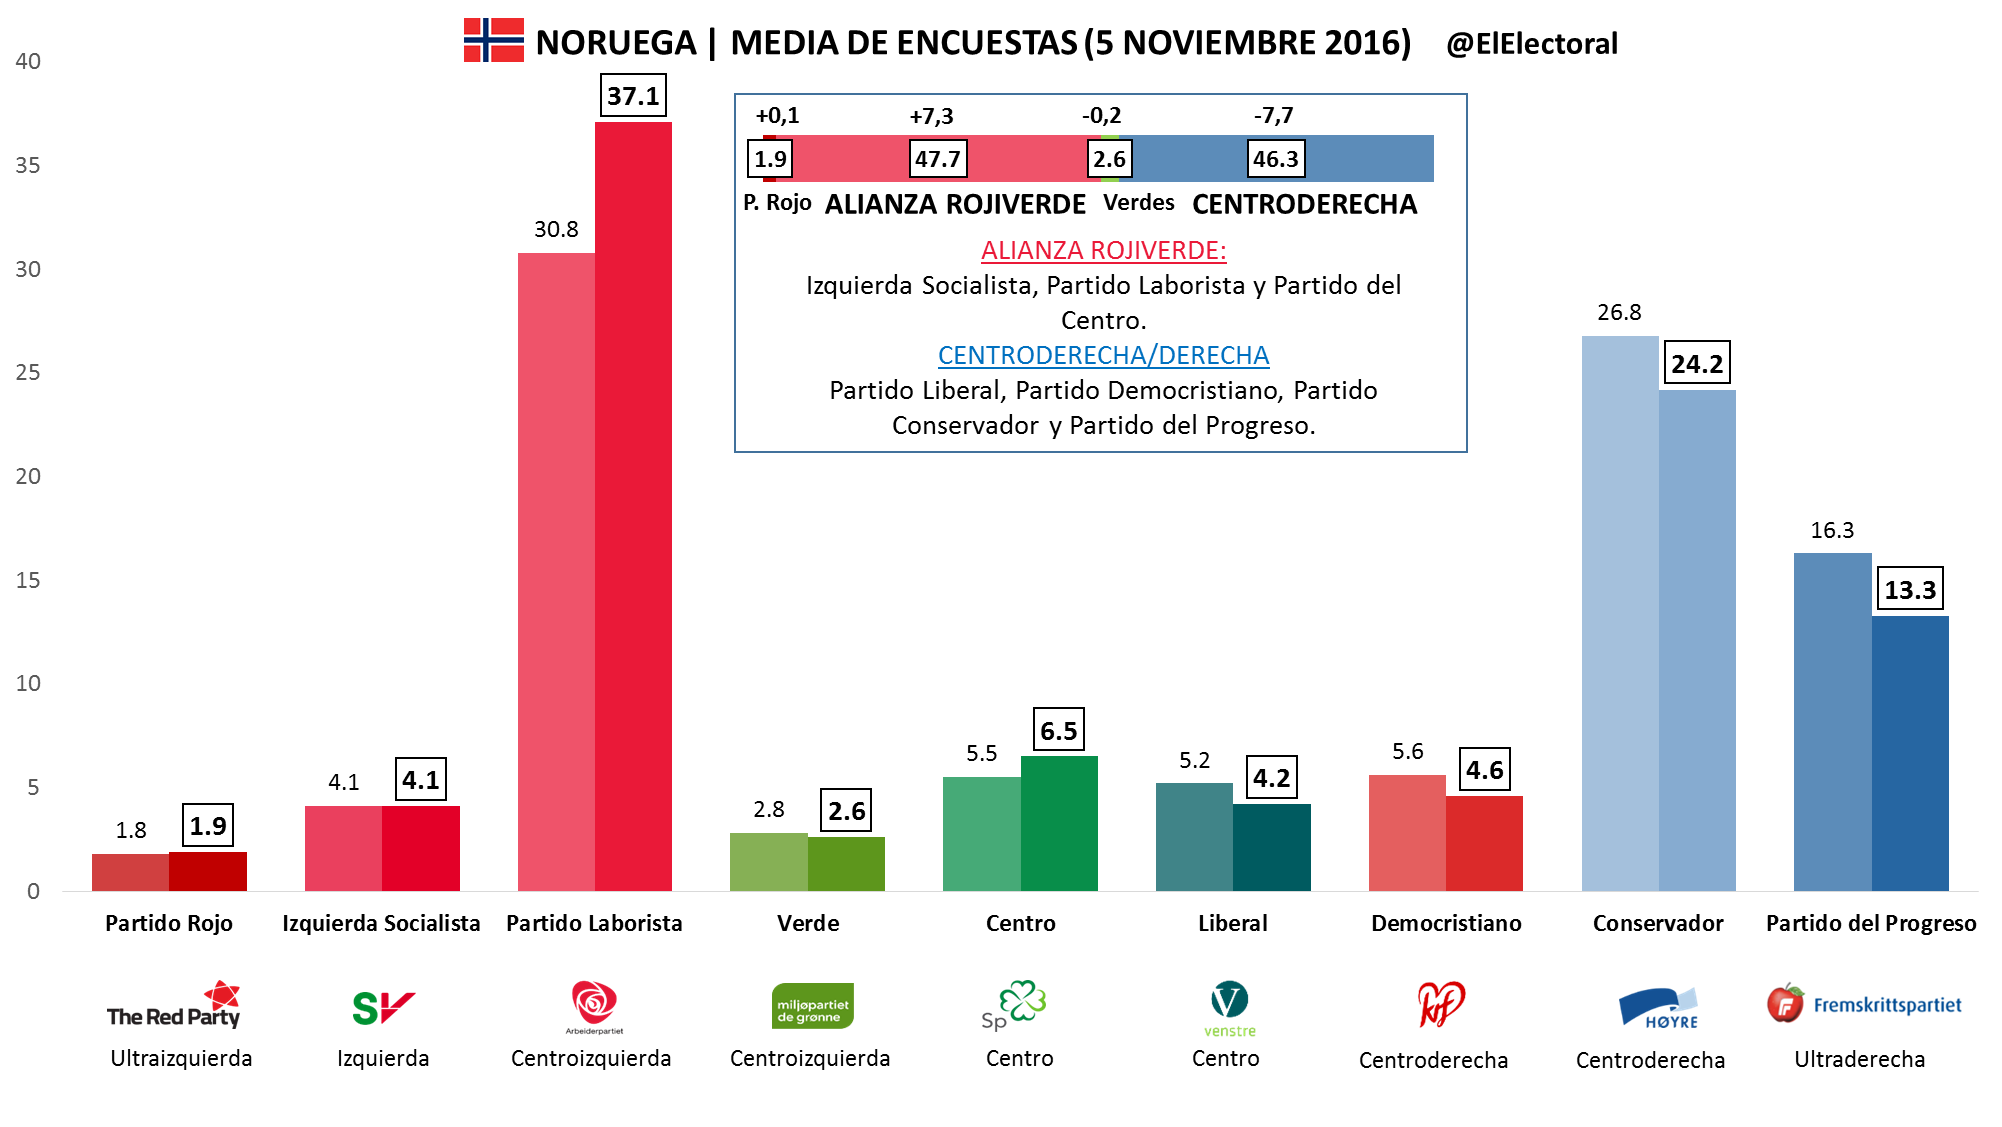 Media de encuestas en Noruega